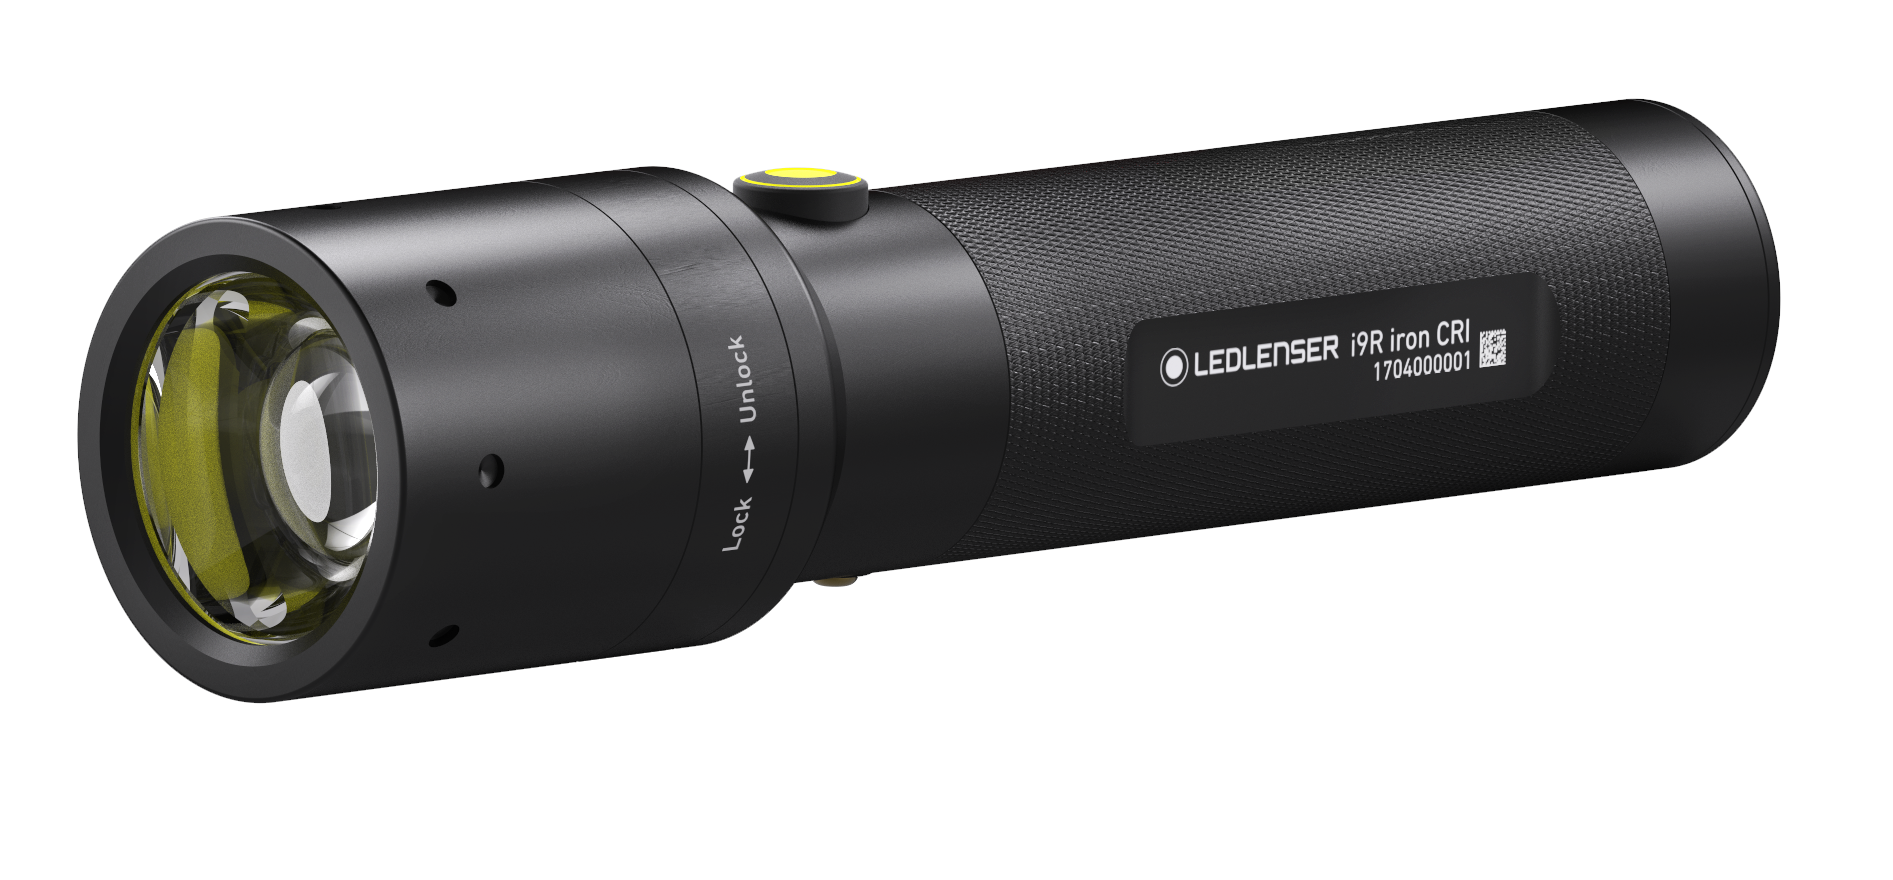 VOLTRONIC SHOP - Led Lenser Flashlight i9R iron CRI